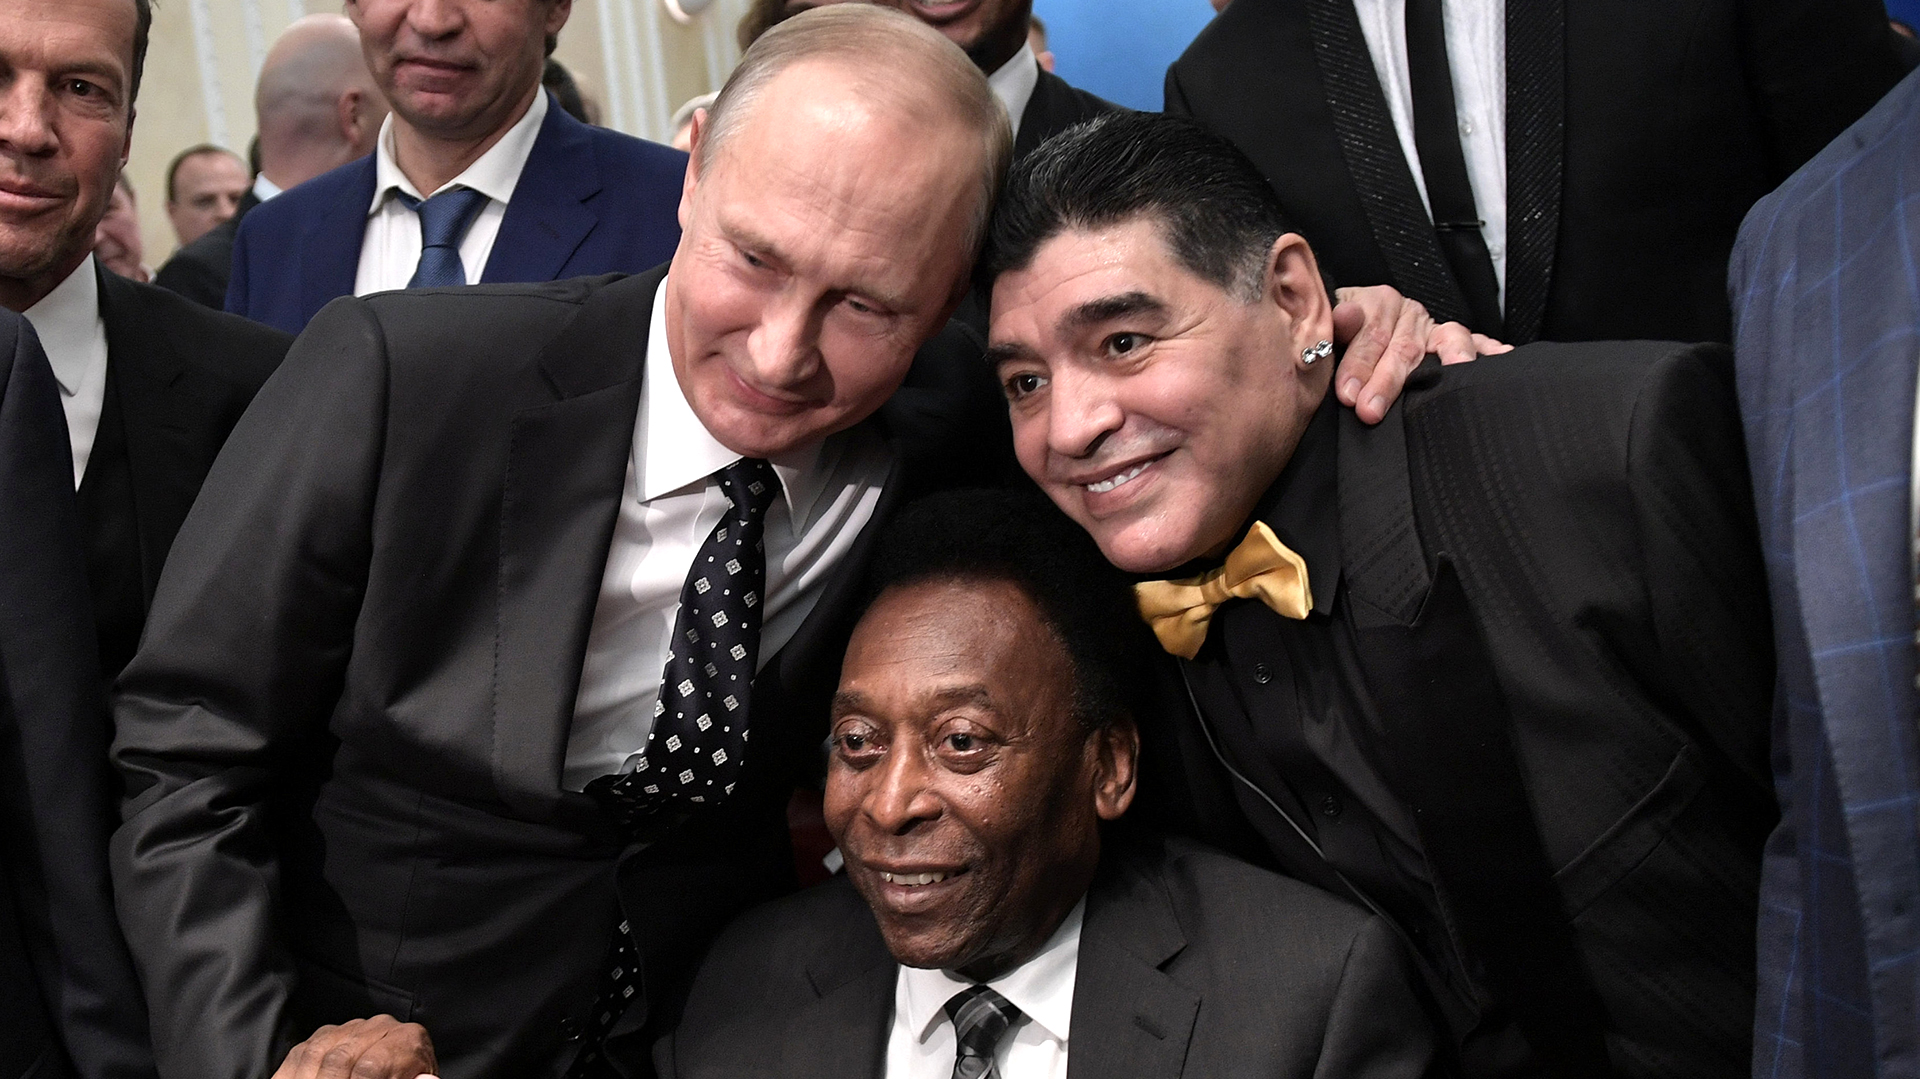 Las dos leyendas del fútbol, Pelé y Maradona junto al presidente ruso, Vladimir Putin, durante el sorteo de los grupos en el Mundial de Rusia 2018 (Sputnik/Alexey Nikolsky/Kremlin via REUTERS)